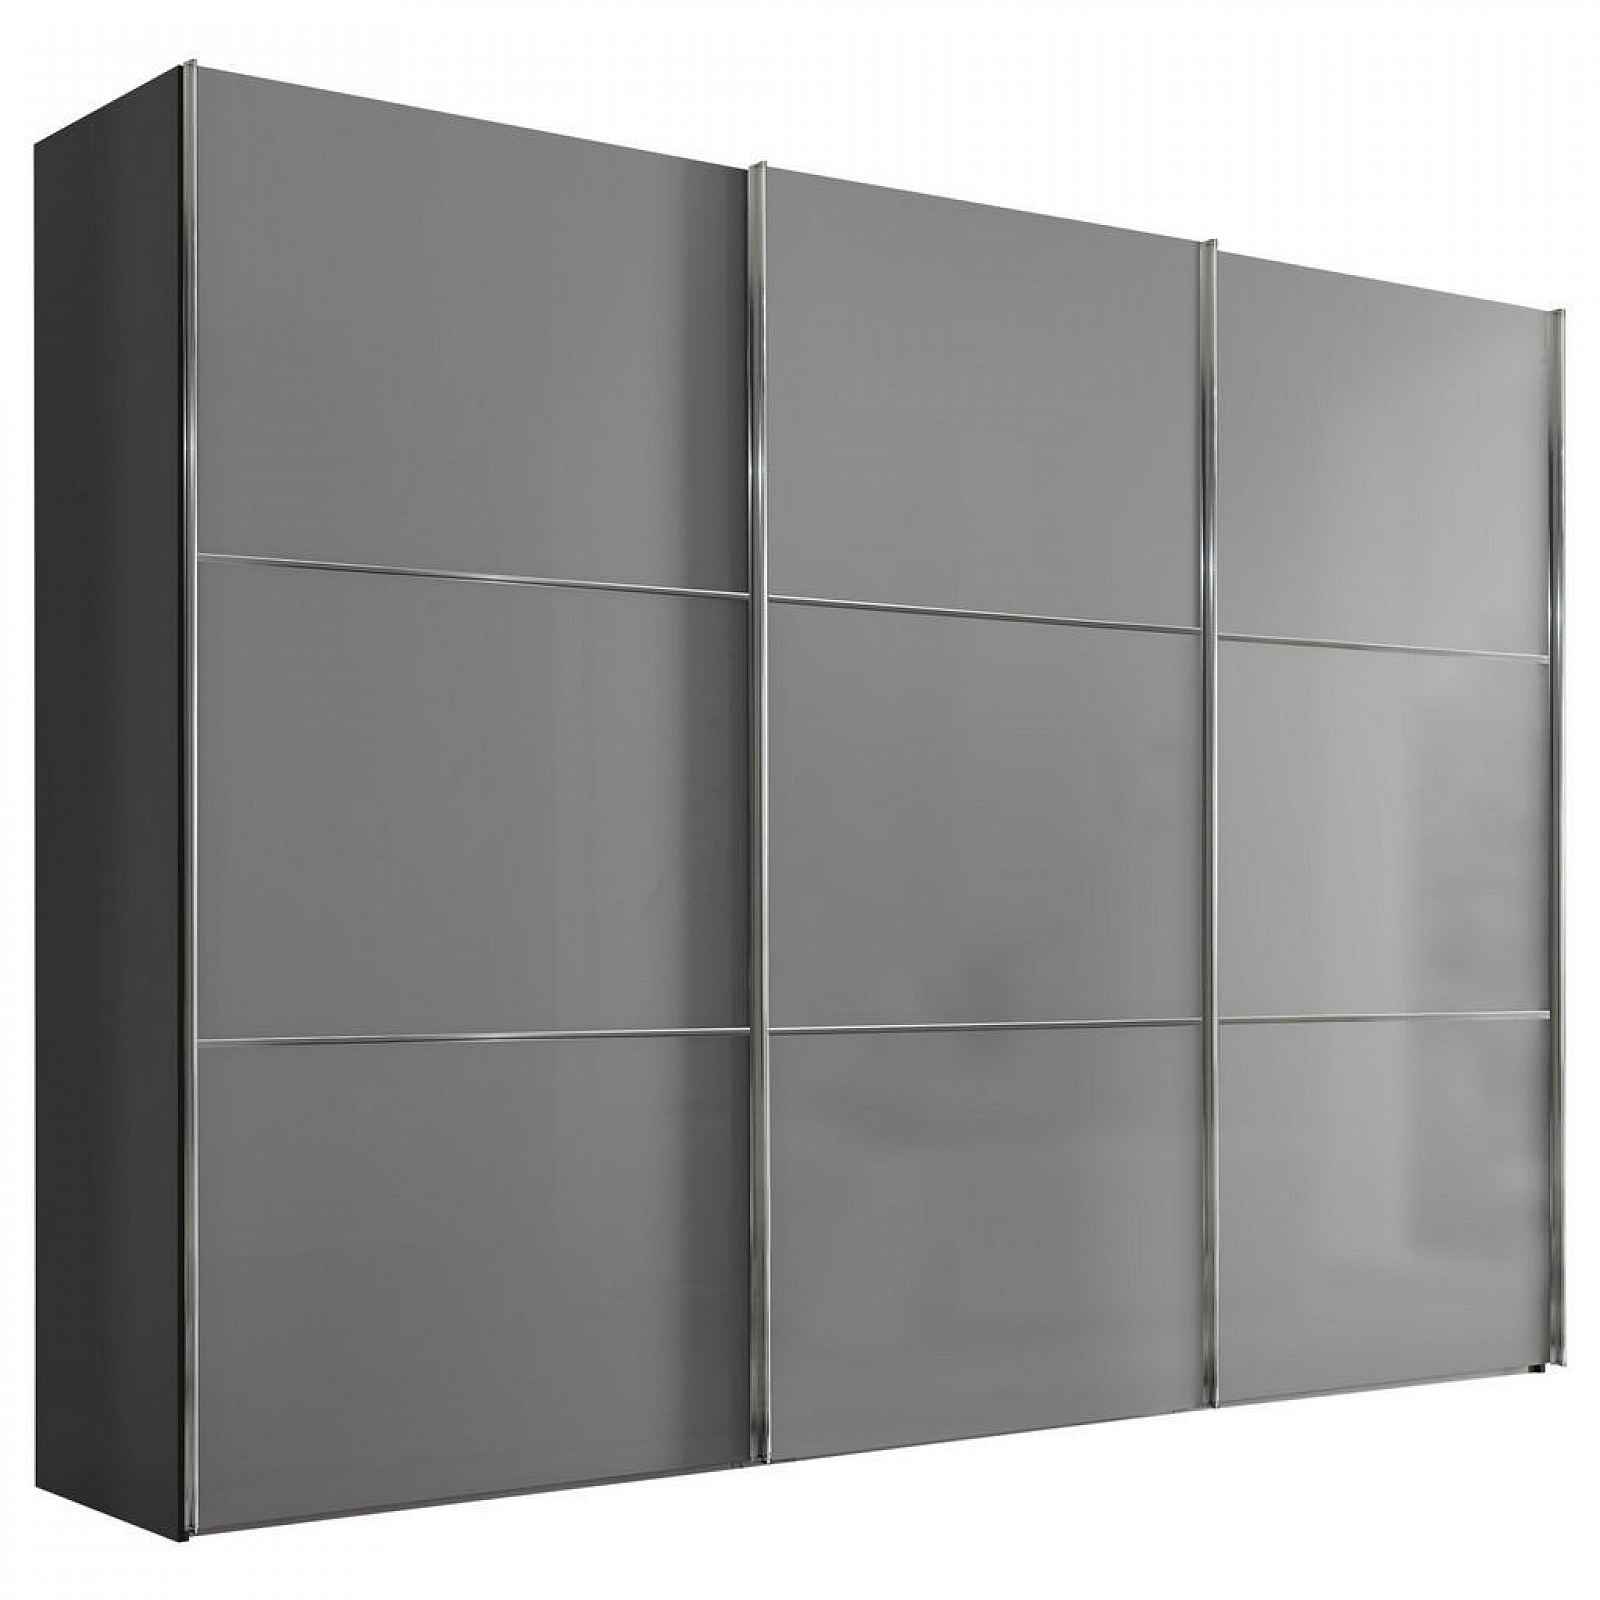 Moderano SCHWEBETÜRENSCHRANK Glasfront, světle šedá, tmavě šedá, 280/222/68 cm - Šatní skříně - 000531006080